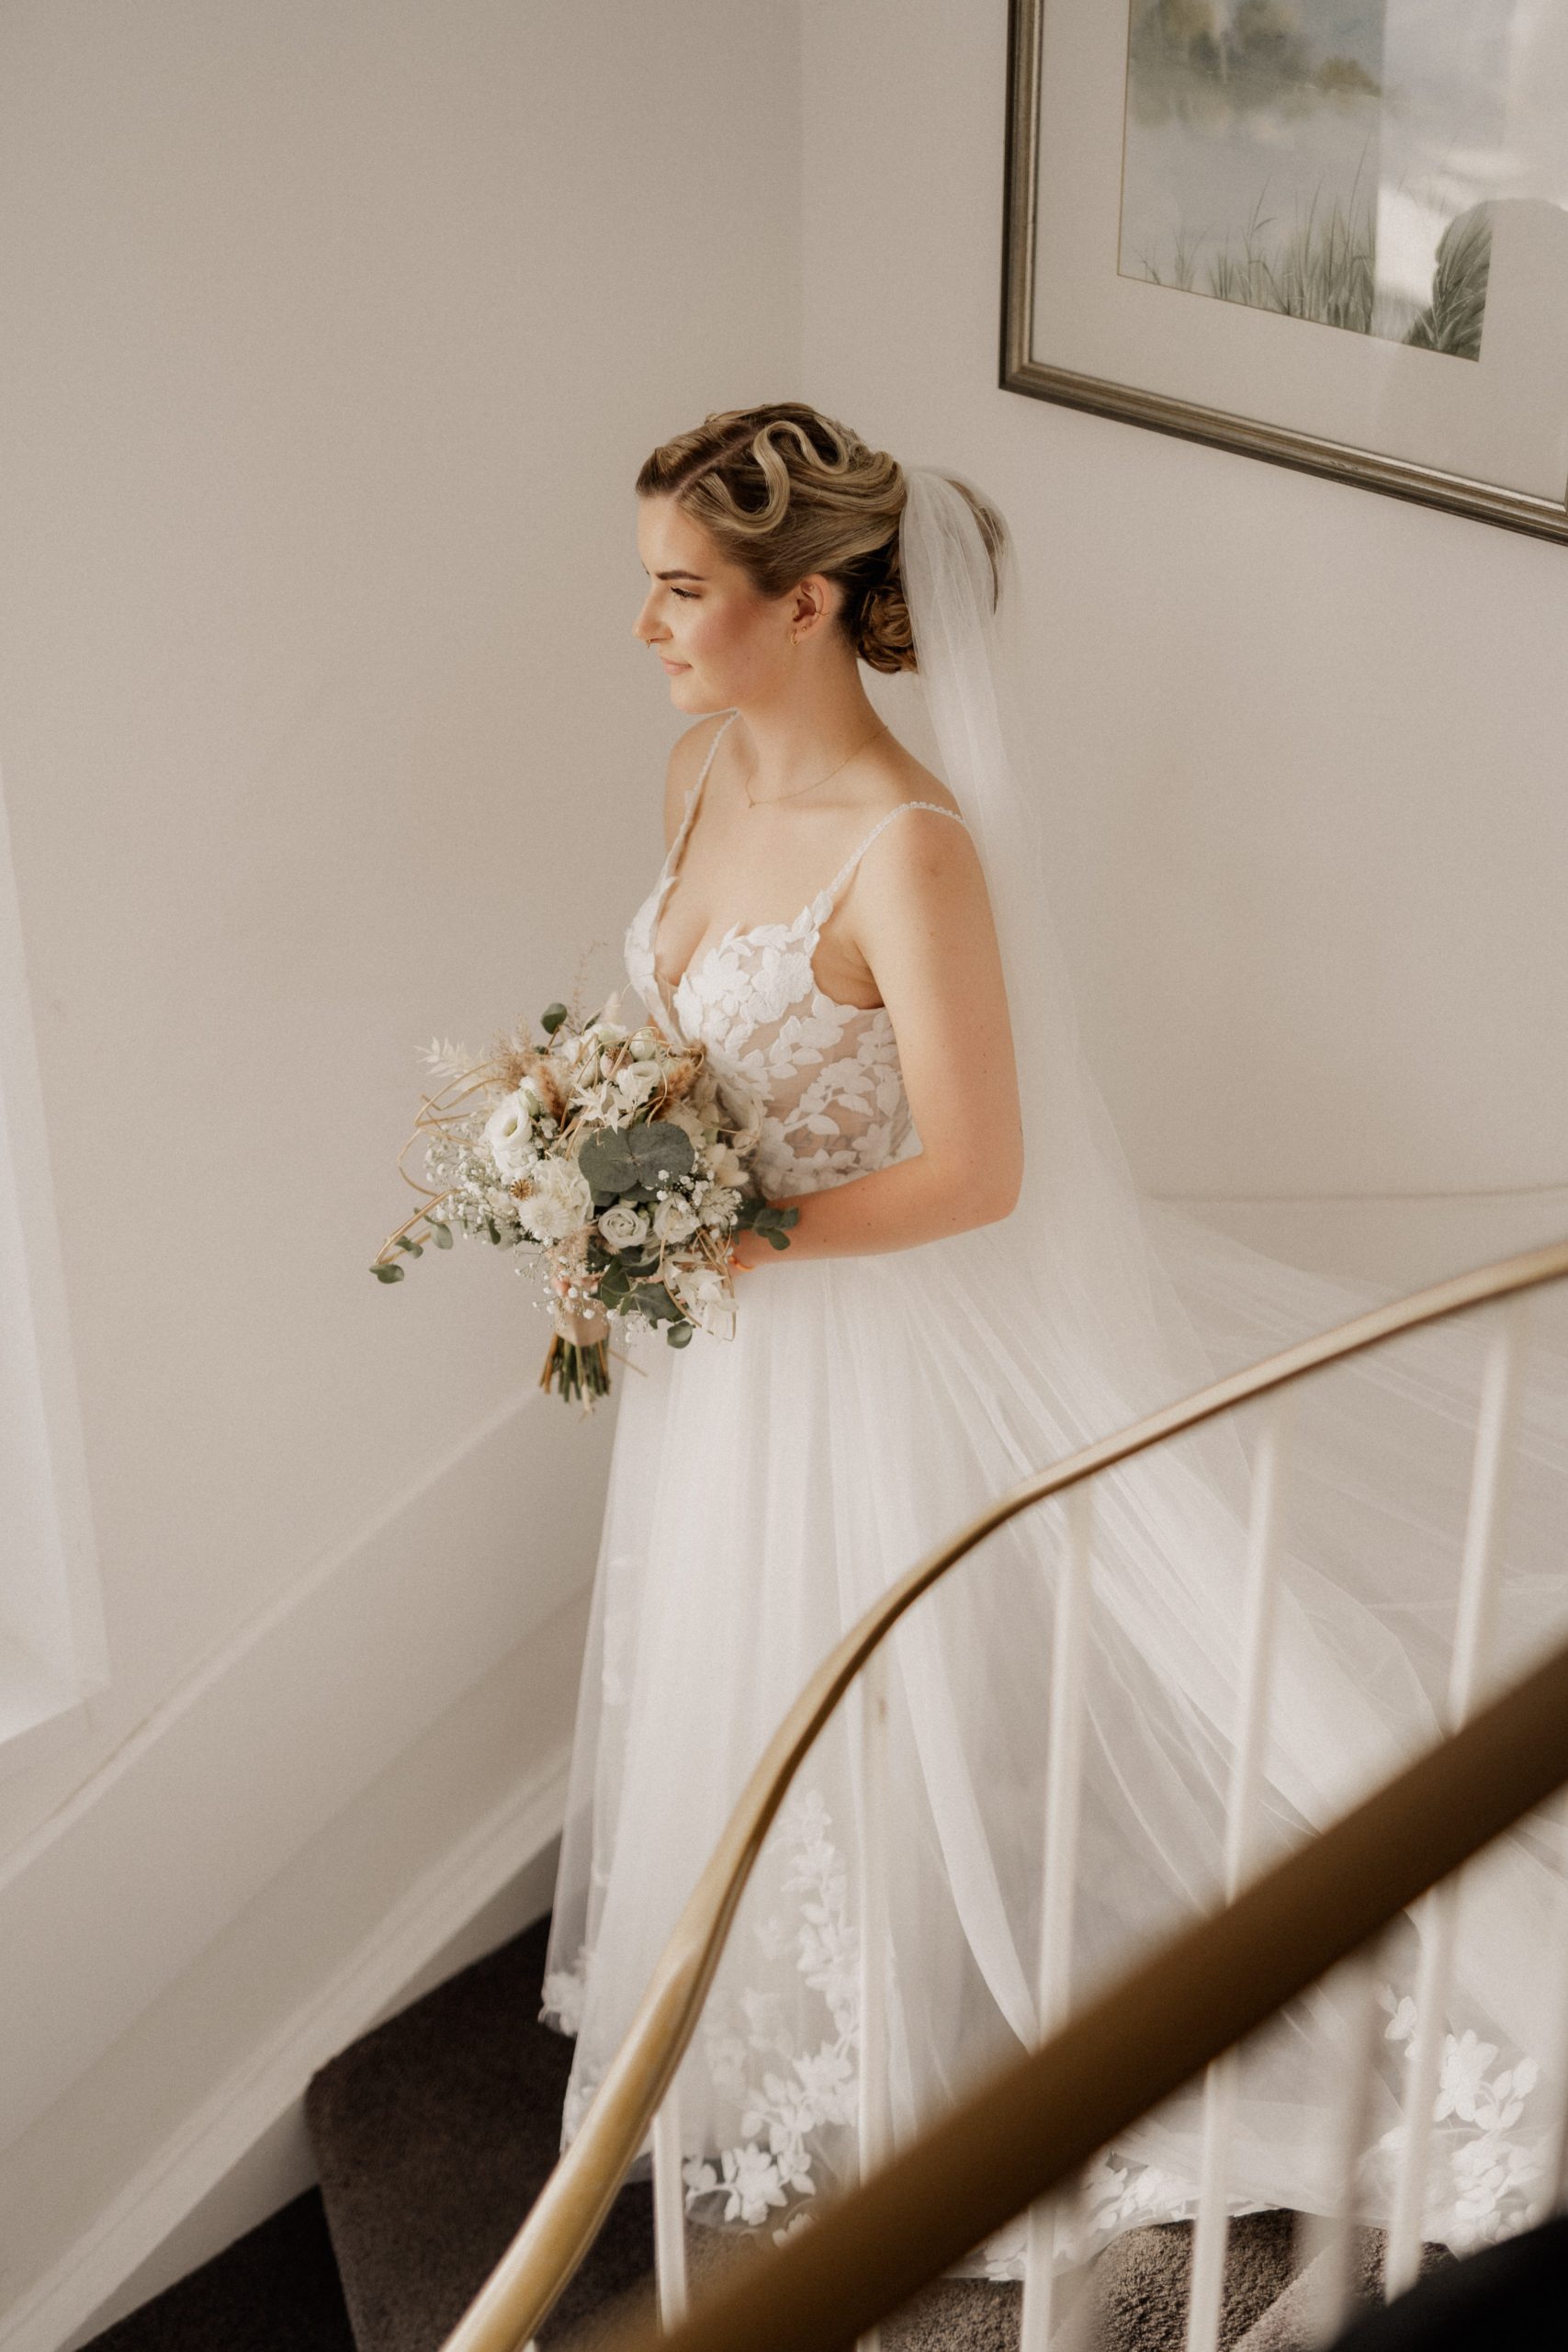 Portaritaufnahmen der Braut auf der Treppe